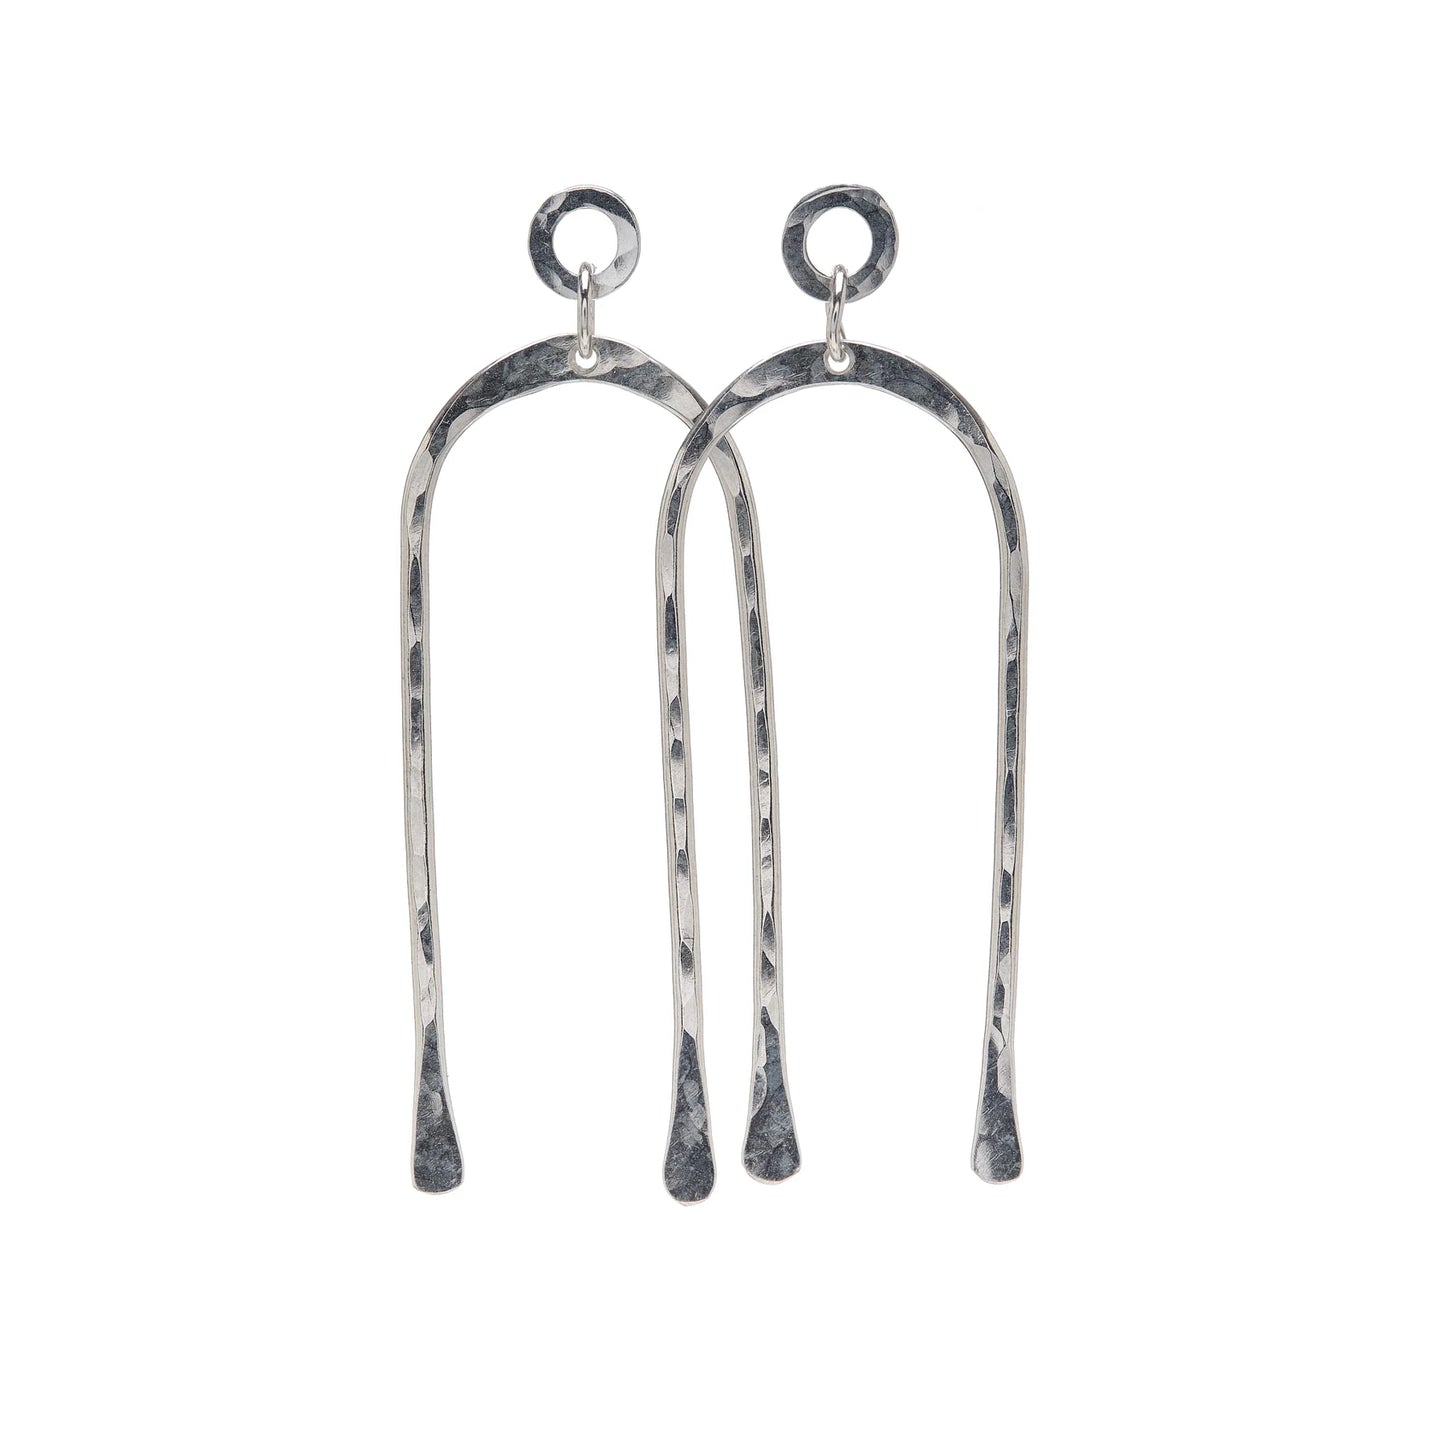 Arches Earrings in silver by Kenda Kist